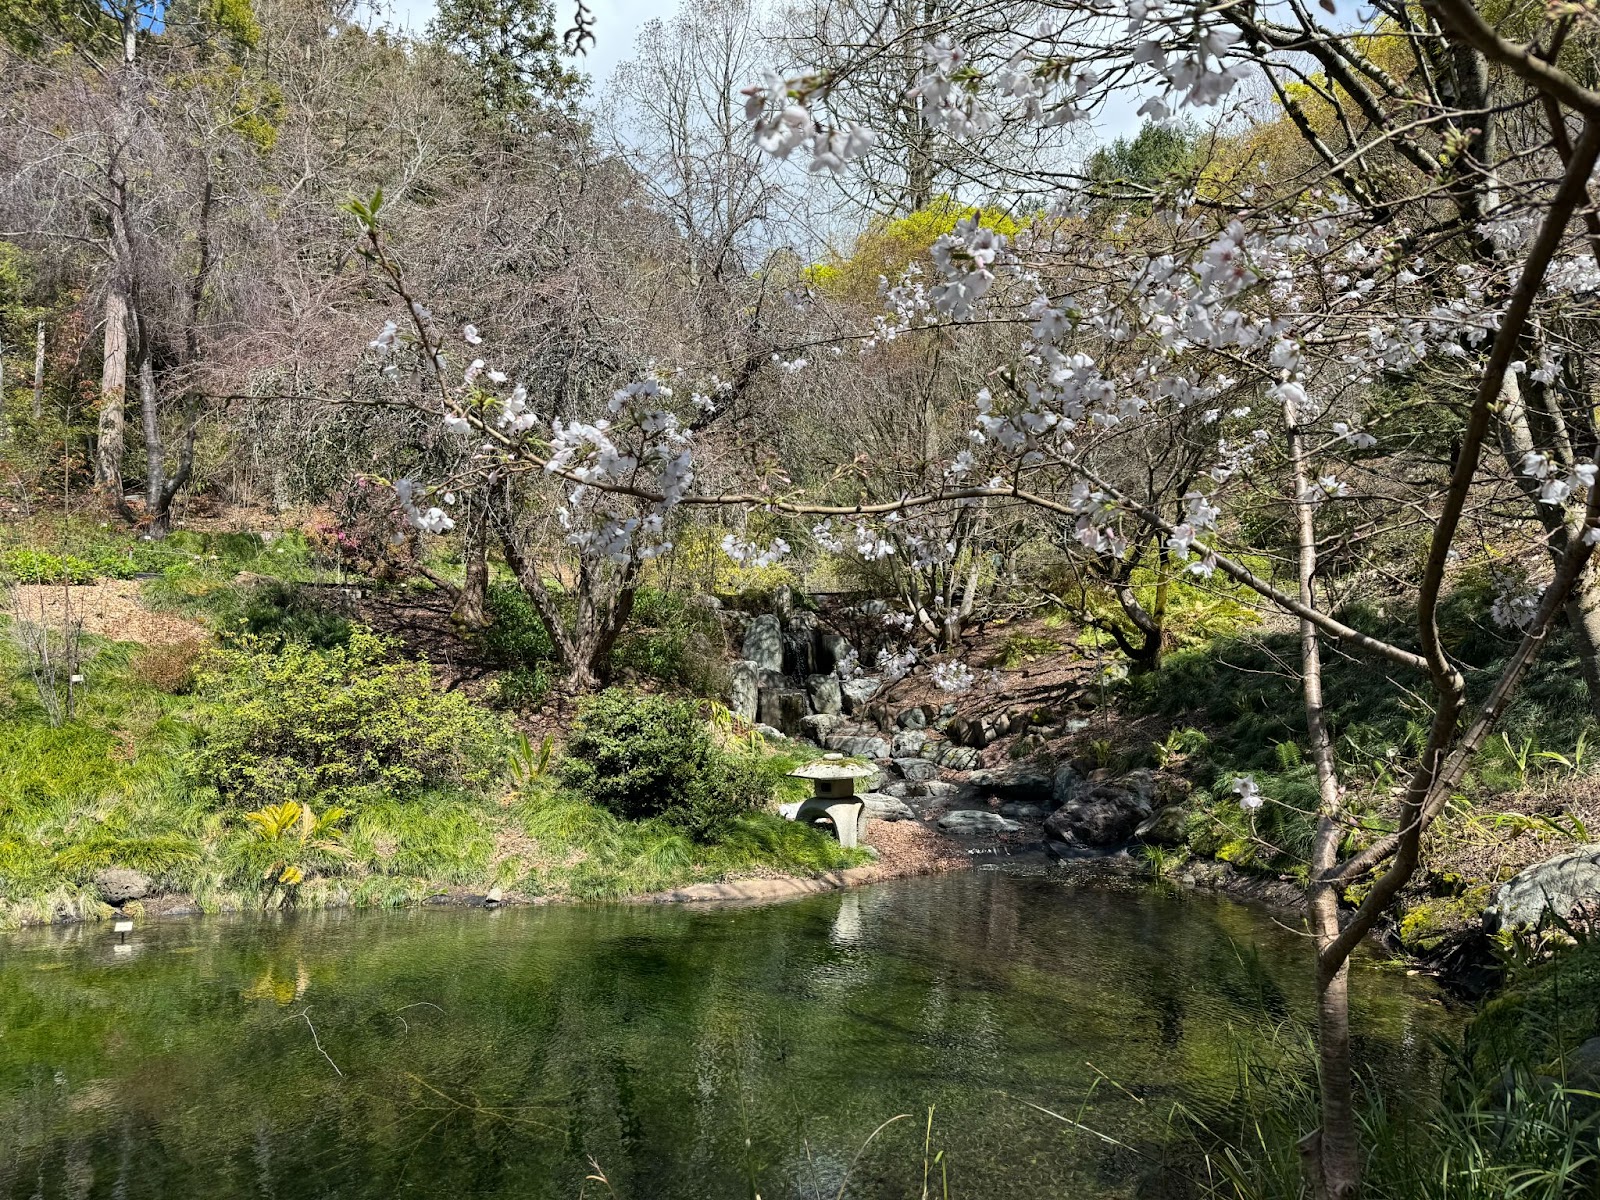 A pond with a cherry blossom tree.